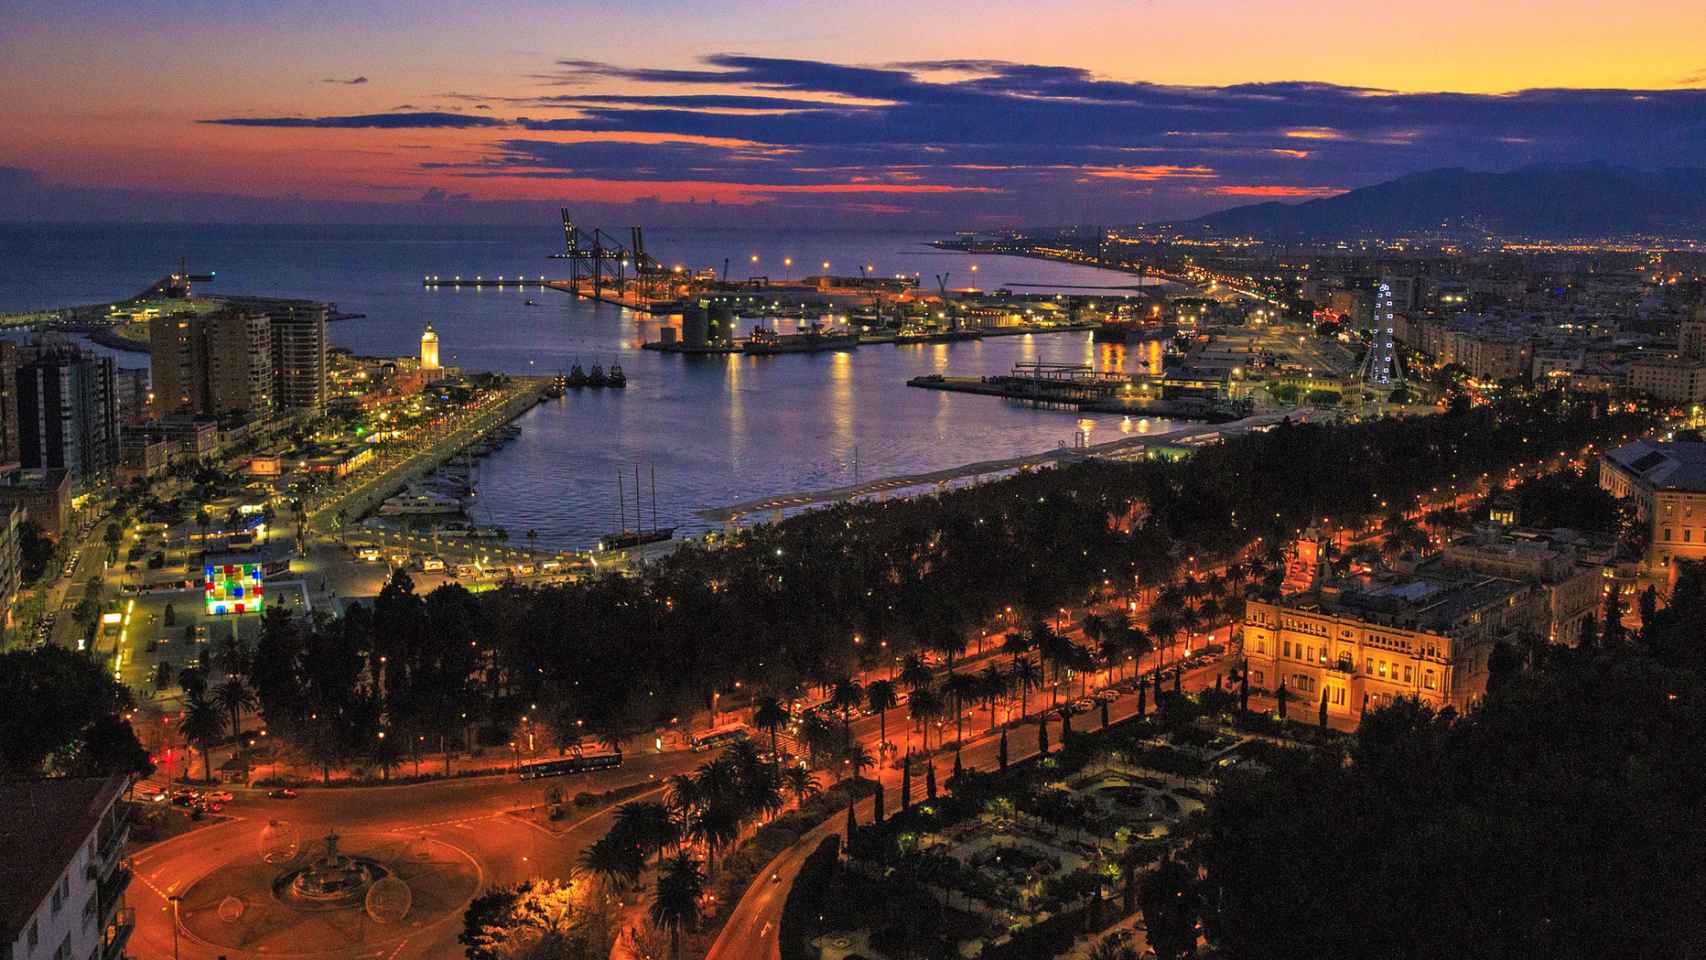 Vista de la ciudad de Málaga. Foto: Robert Karyś from Pixabay